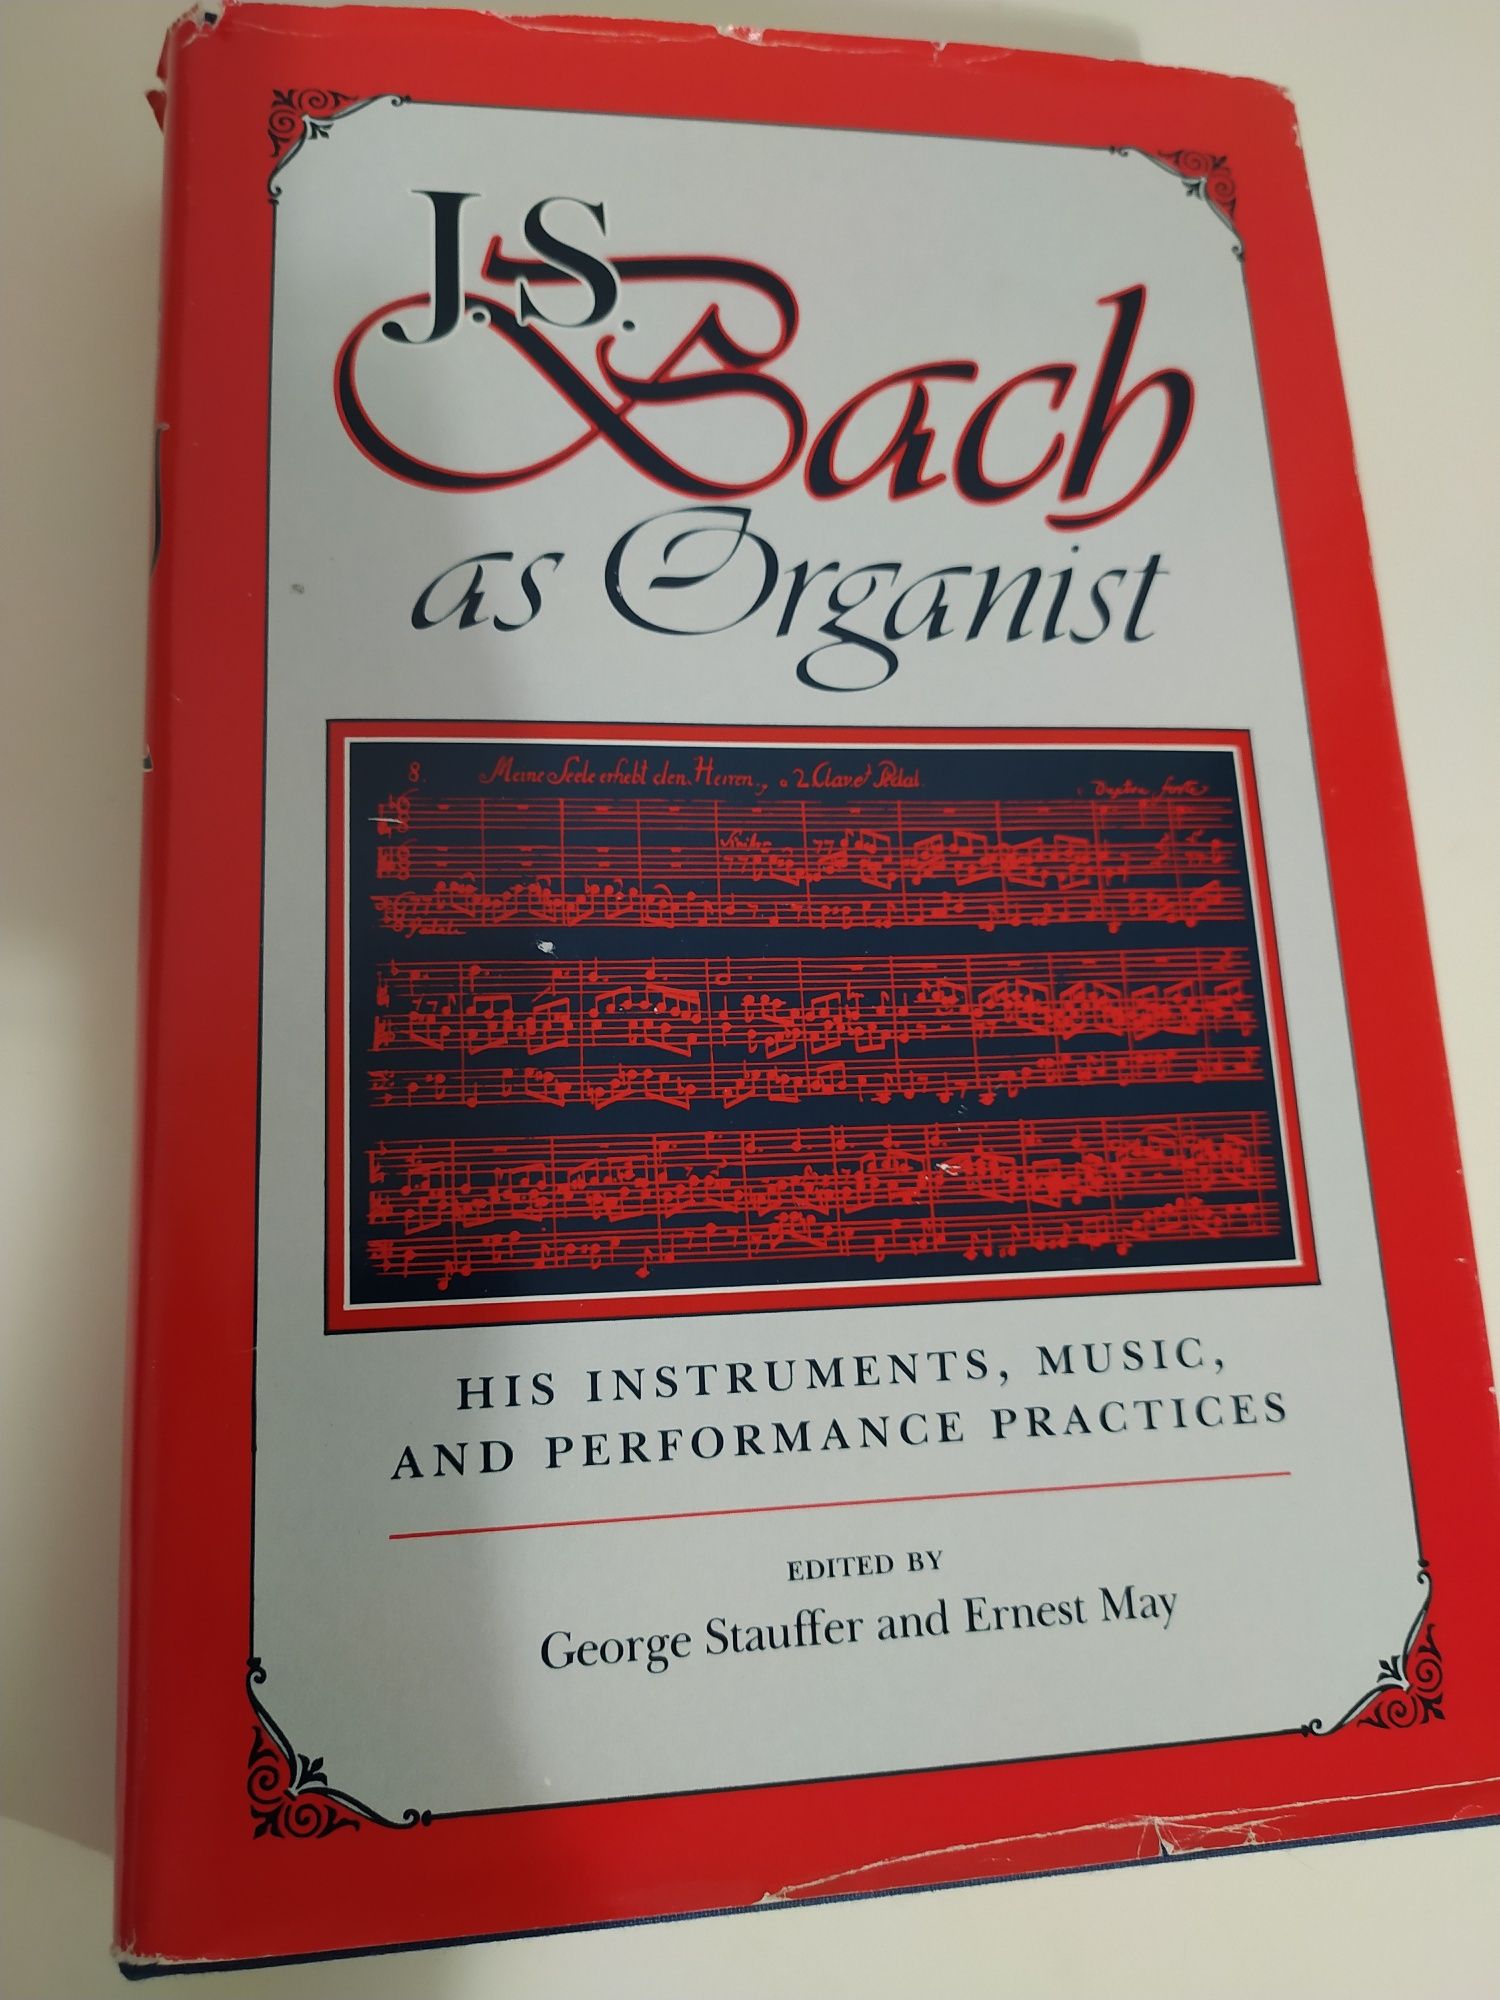 J. S. Bach as organist